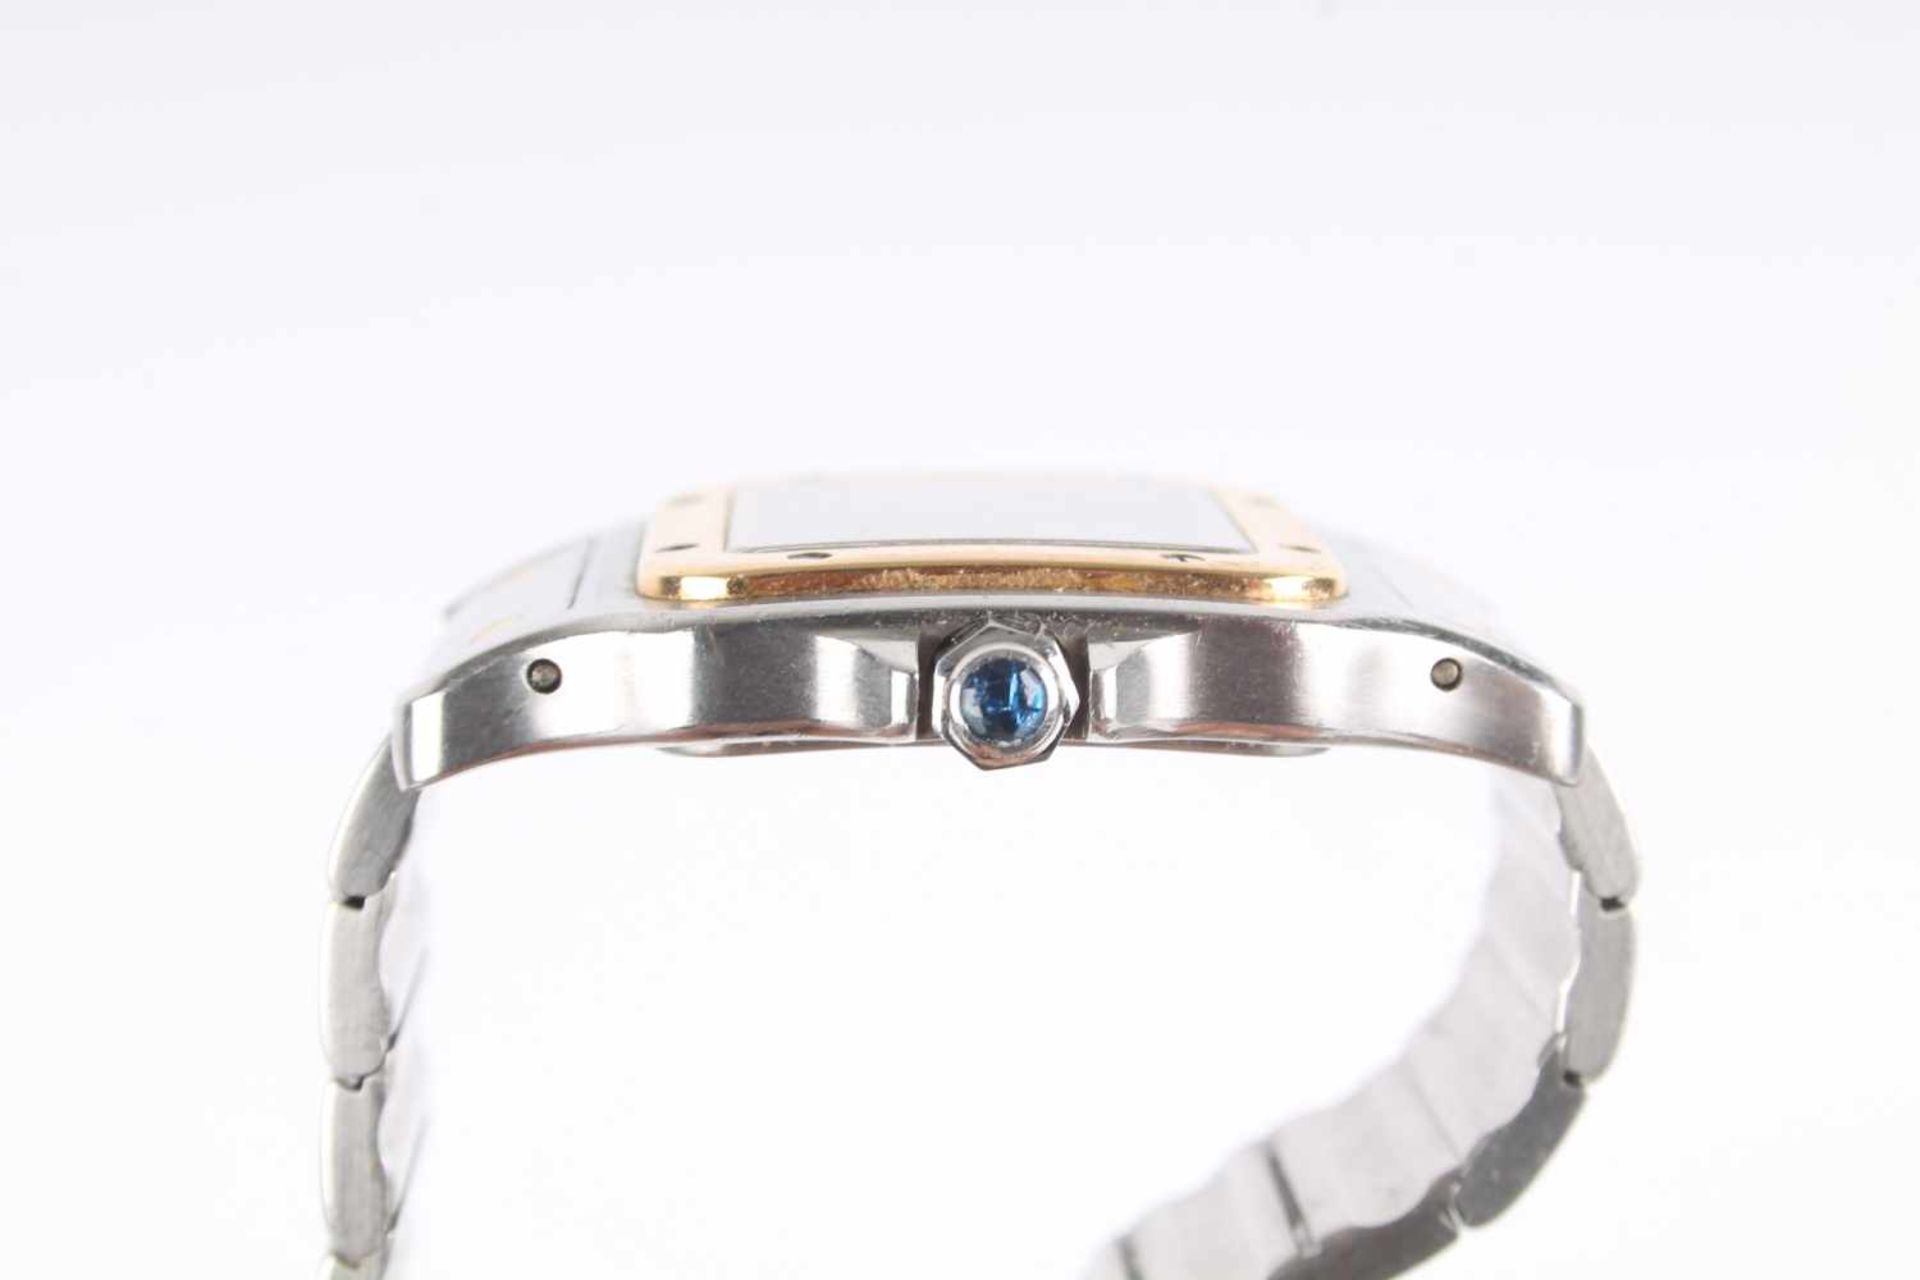 Cartier Santos Galbee Herrenuhr Armbanduhr Stahl/Gold 750, men's watch steel / 18K gold, - Bild 3 aus 7